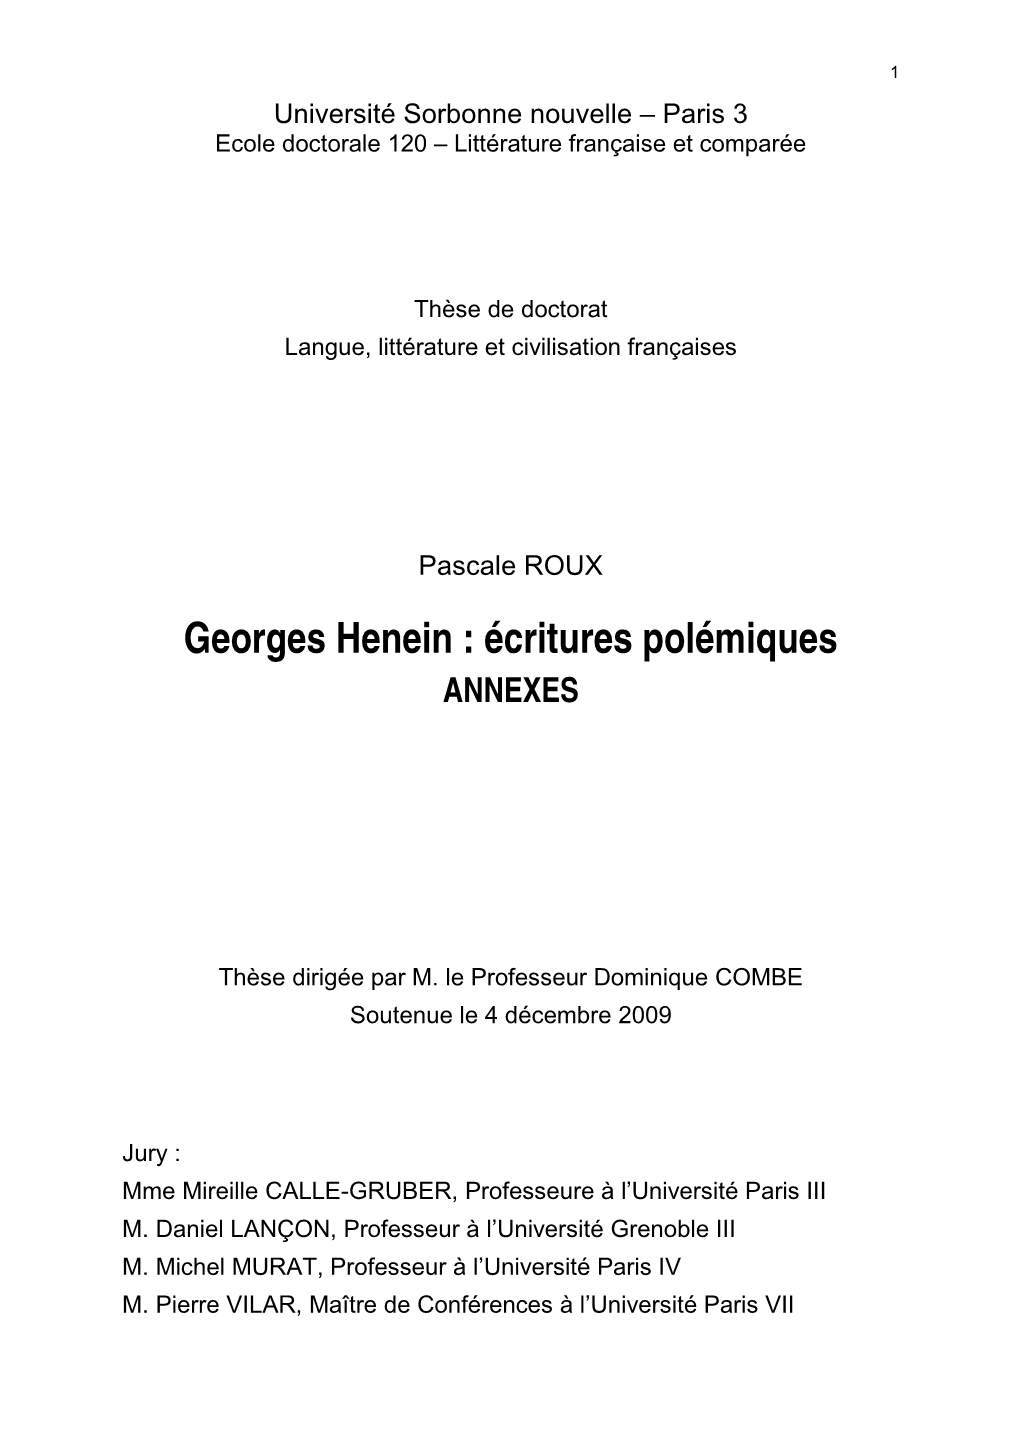 Georges Henein : Écritures Polémiques ANNEXES